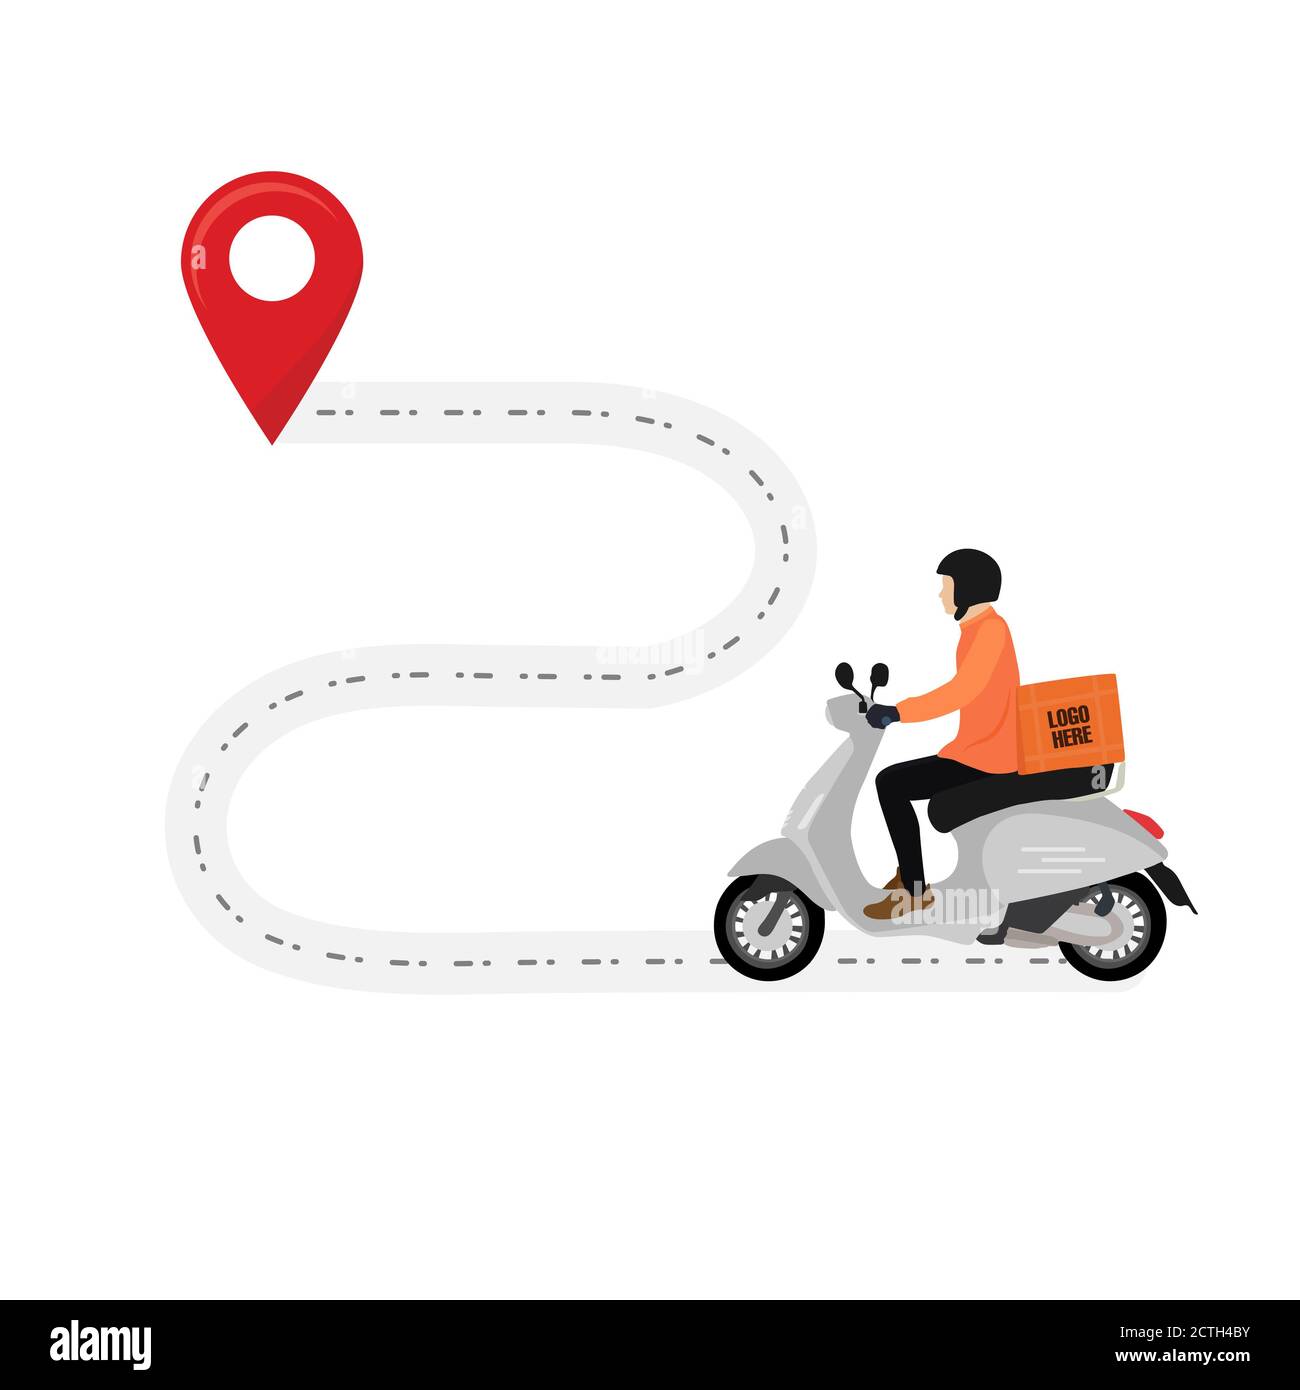 Lieferung Durch Scooter Konzept Illustration. Schnelle Lieferung E-Commerce-Konzept. Online-Delivery-Service-Konzept. Route für die Lieferung nach Hause zuordnen. Loca Stockfoto